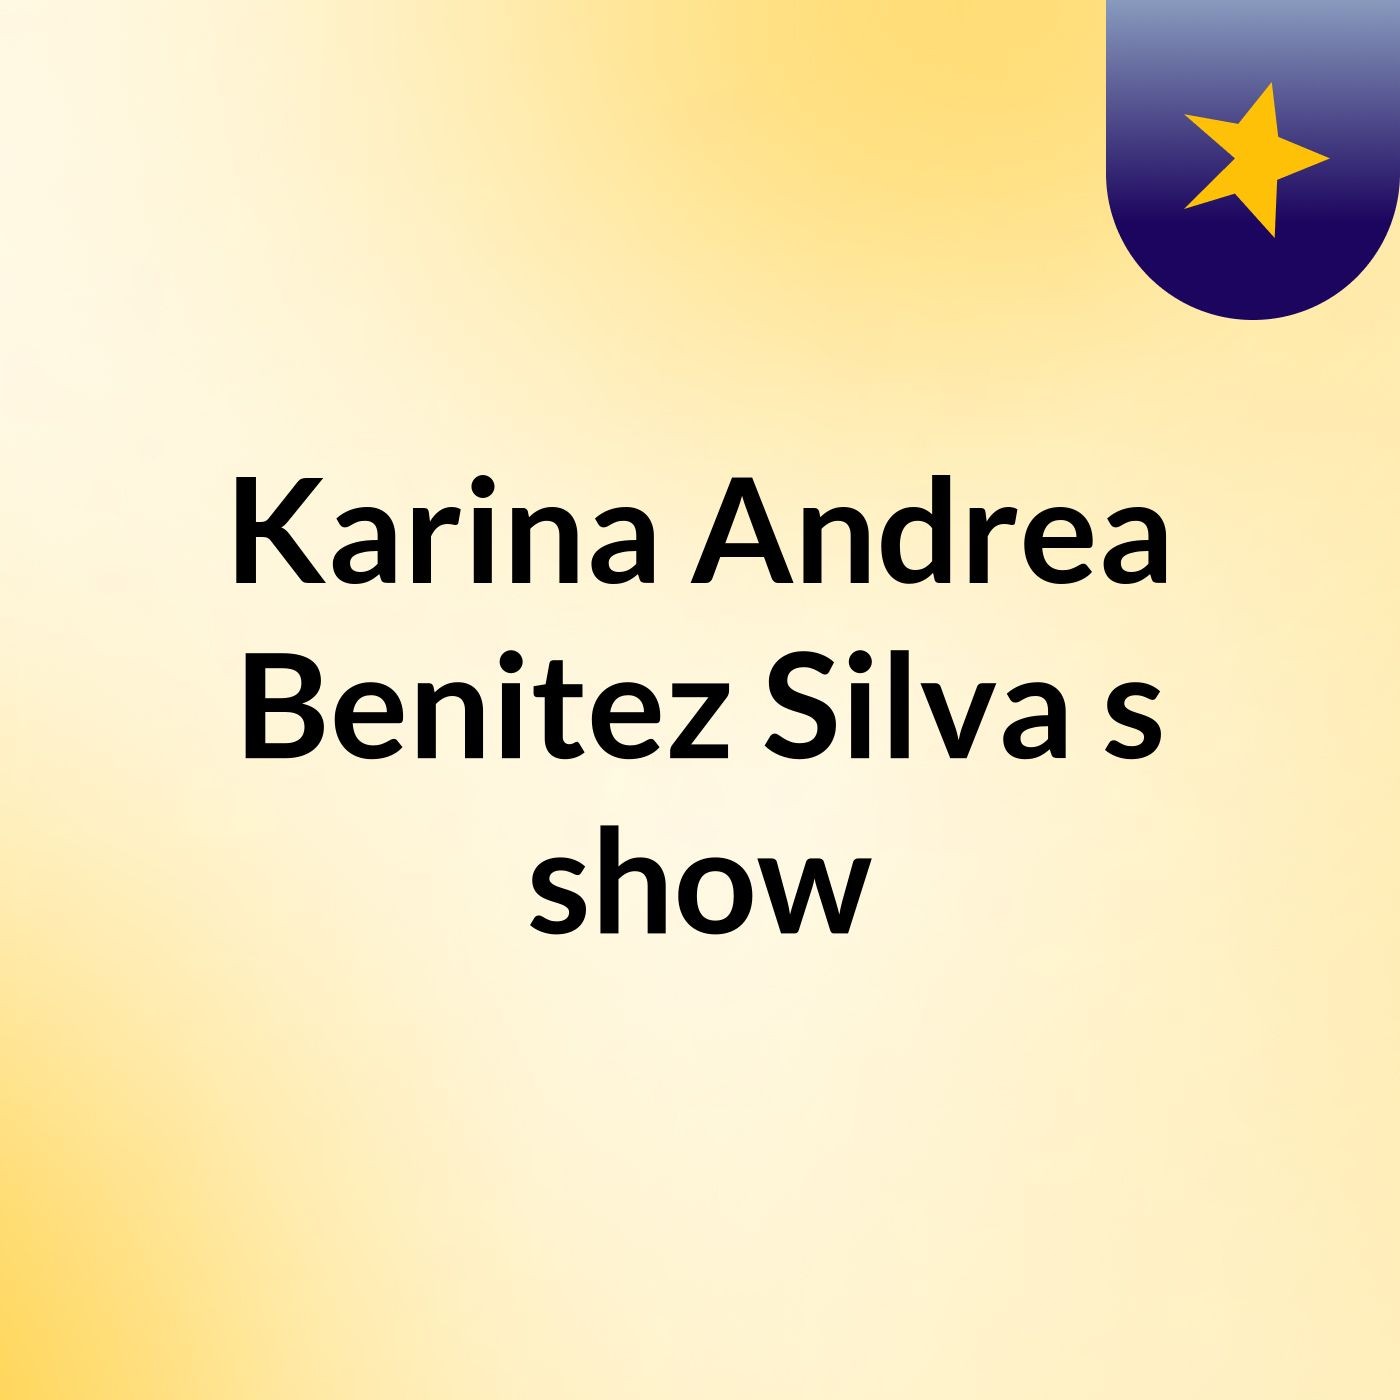 Karina Andrea Benitez Silva's show